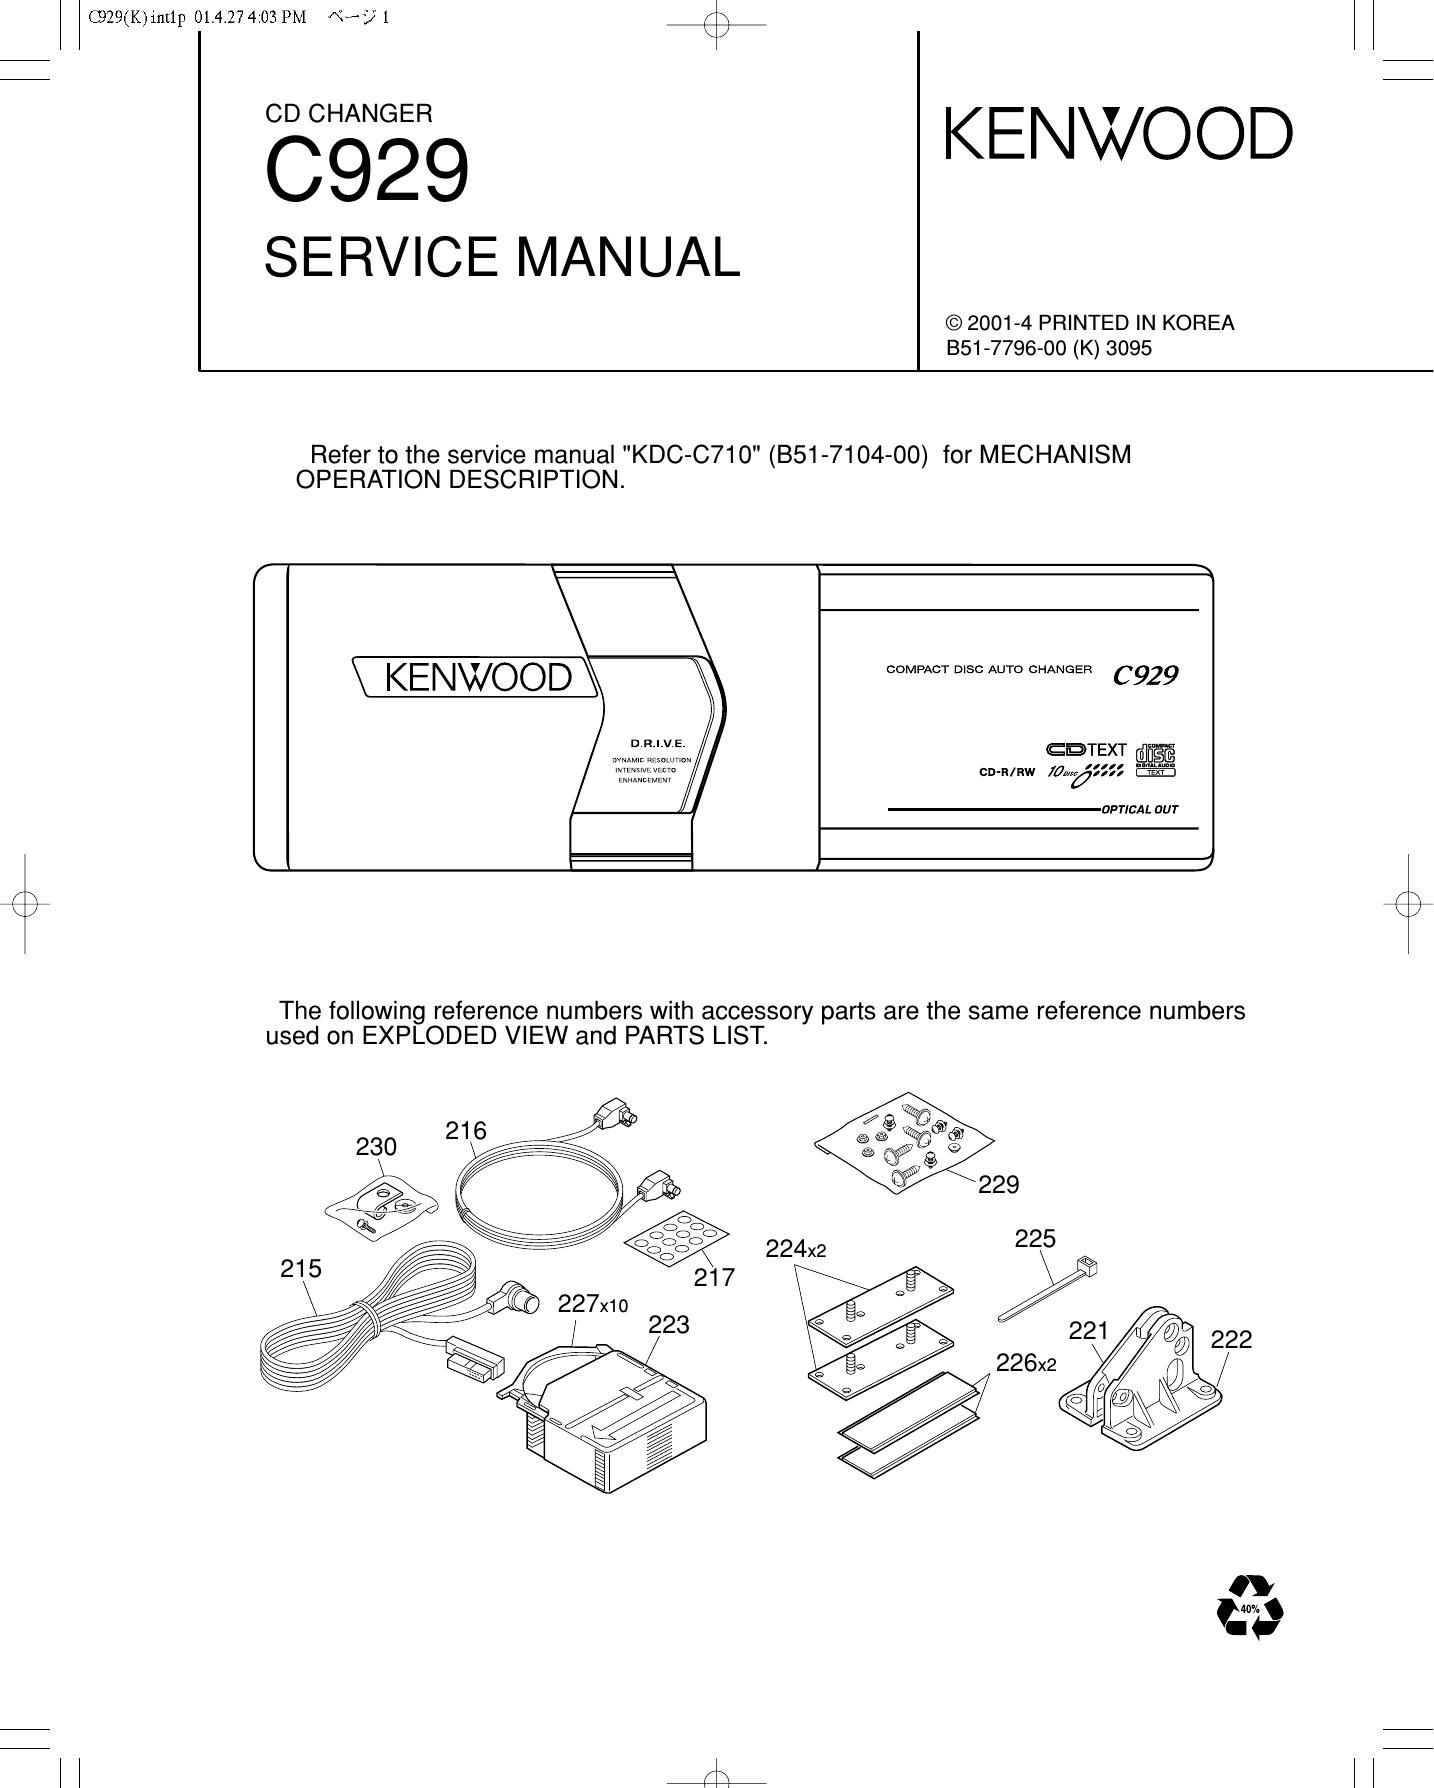 Kenwood C 929 Service Manual